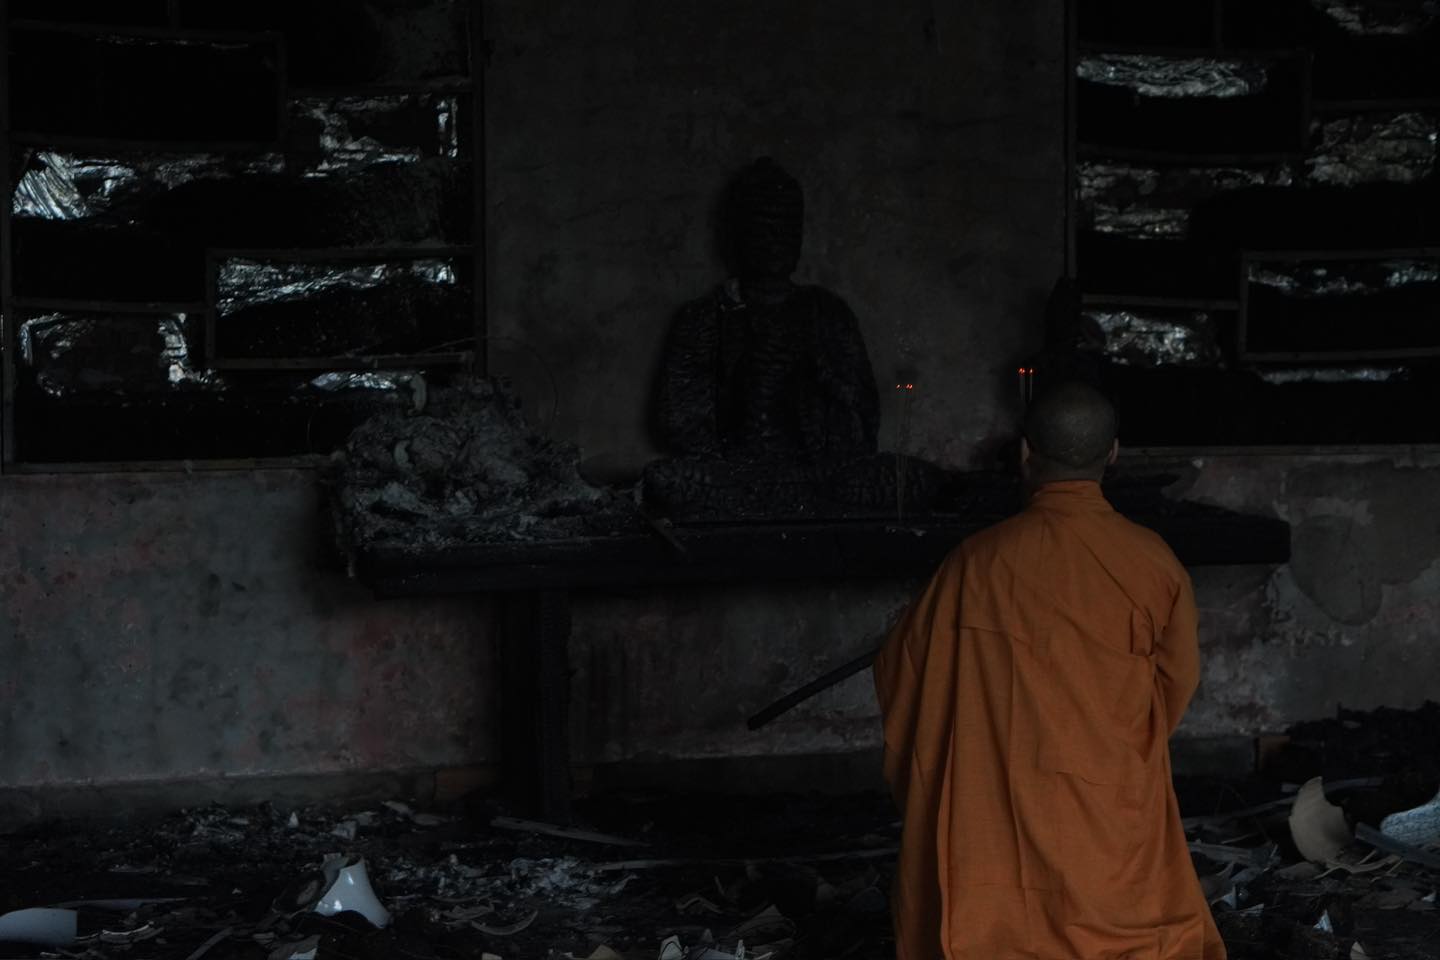 Địa điểm xảy ra cháy tại khu vực giảng đường (Pháp Vân Đường) nằm trong khuôn viên chùa Phật Quang, diện tích cháy khoảng 200 m2, chất cháy chủ yếu là đồ gỗ, giấy và bàn ghế nhựa.